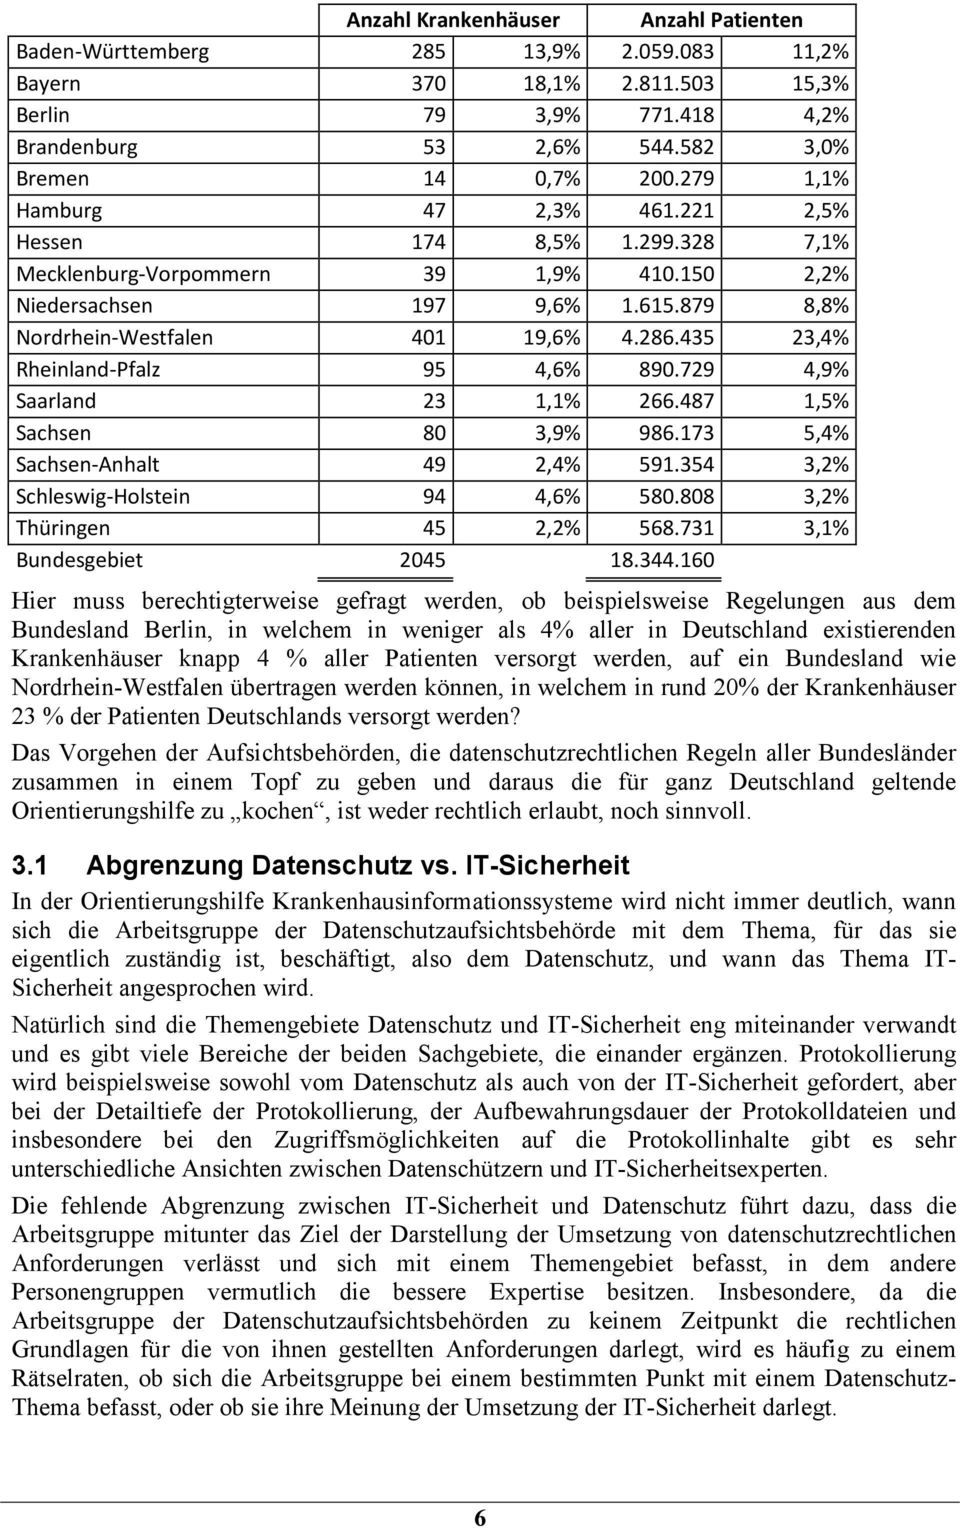 435 23,4% Rheinland-Pfalz 95 4,6% 890.729 4,9% Saarland 23 1,1% 266.487 1,5% Sachsen 80 3,9% 986.173 5,4% Sachsen-Anhalt 49 2,4% 591.354 3,2% Schleswig-Holstein 94 4,6% 580.